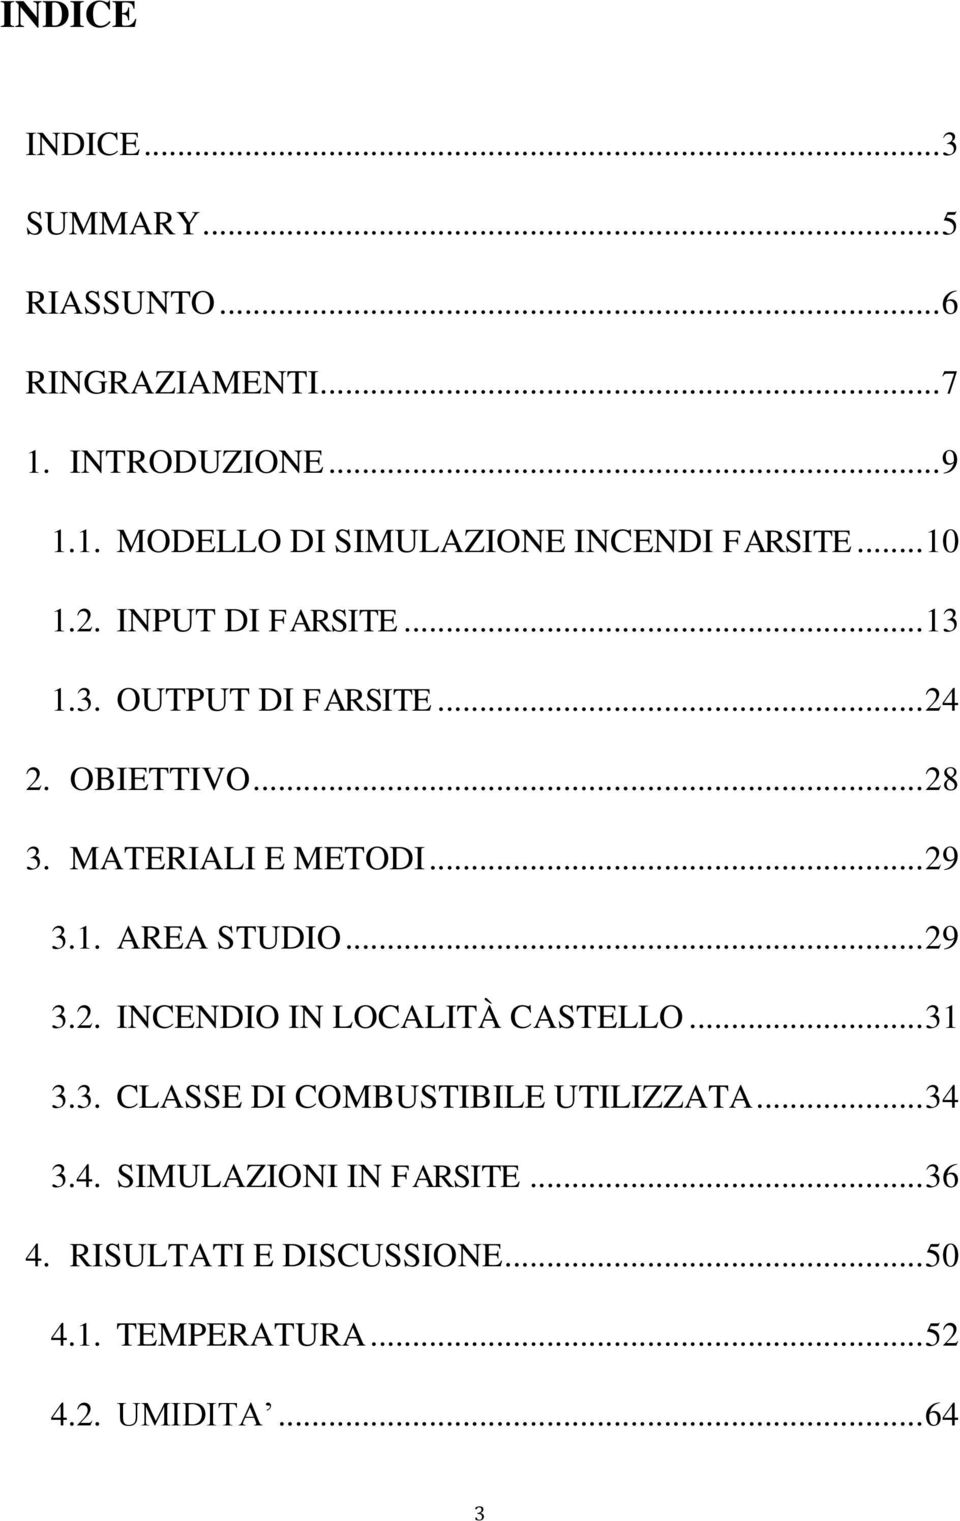 .. 29 3.2. INCENDIO IN LOCALITÀ CASTELLO... 31 3.3. CLASSE DI COMBUSTIBILE UTILIZZATA... 34 3.4. SIMULAZIONI IN FARSITE.